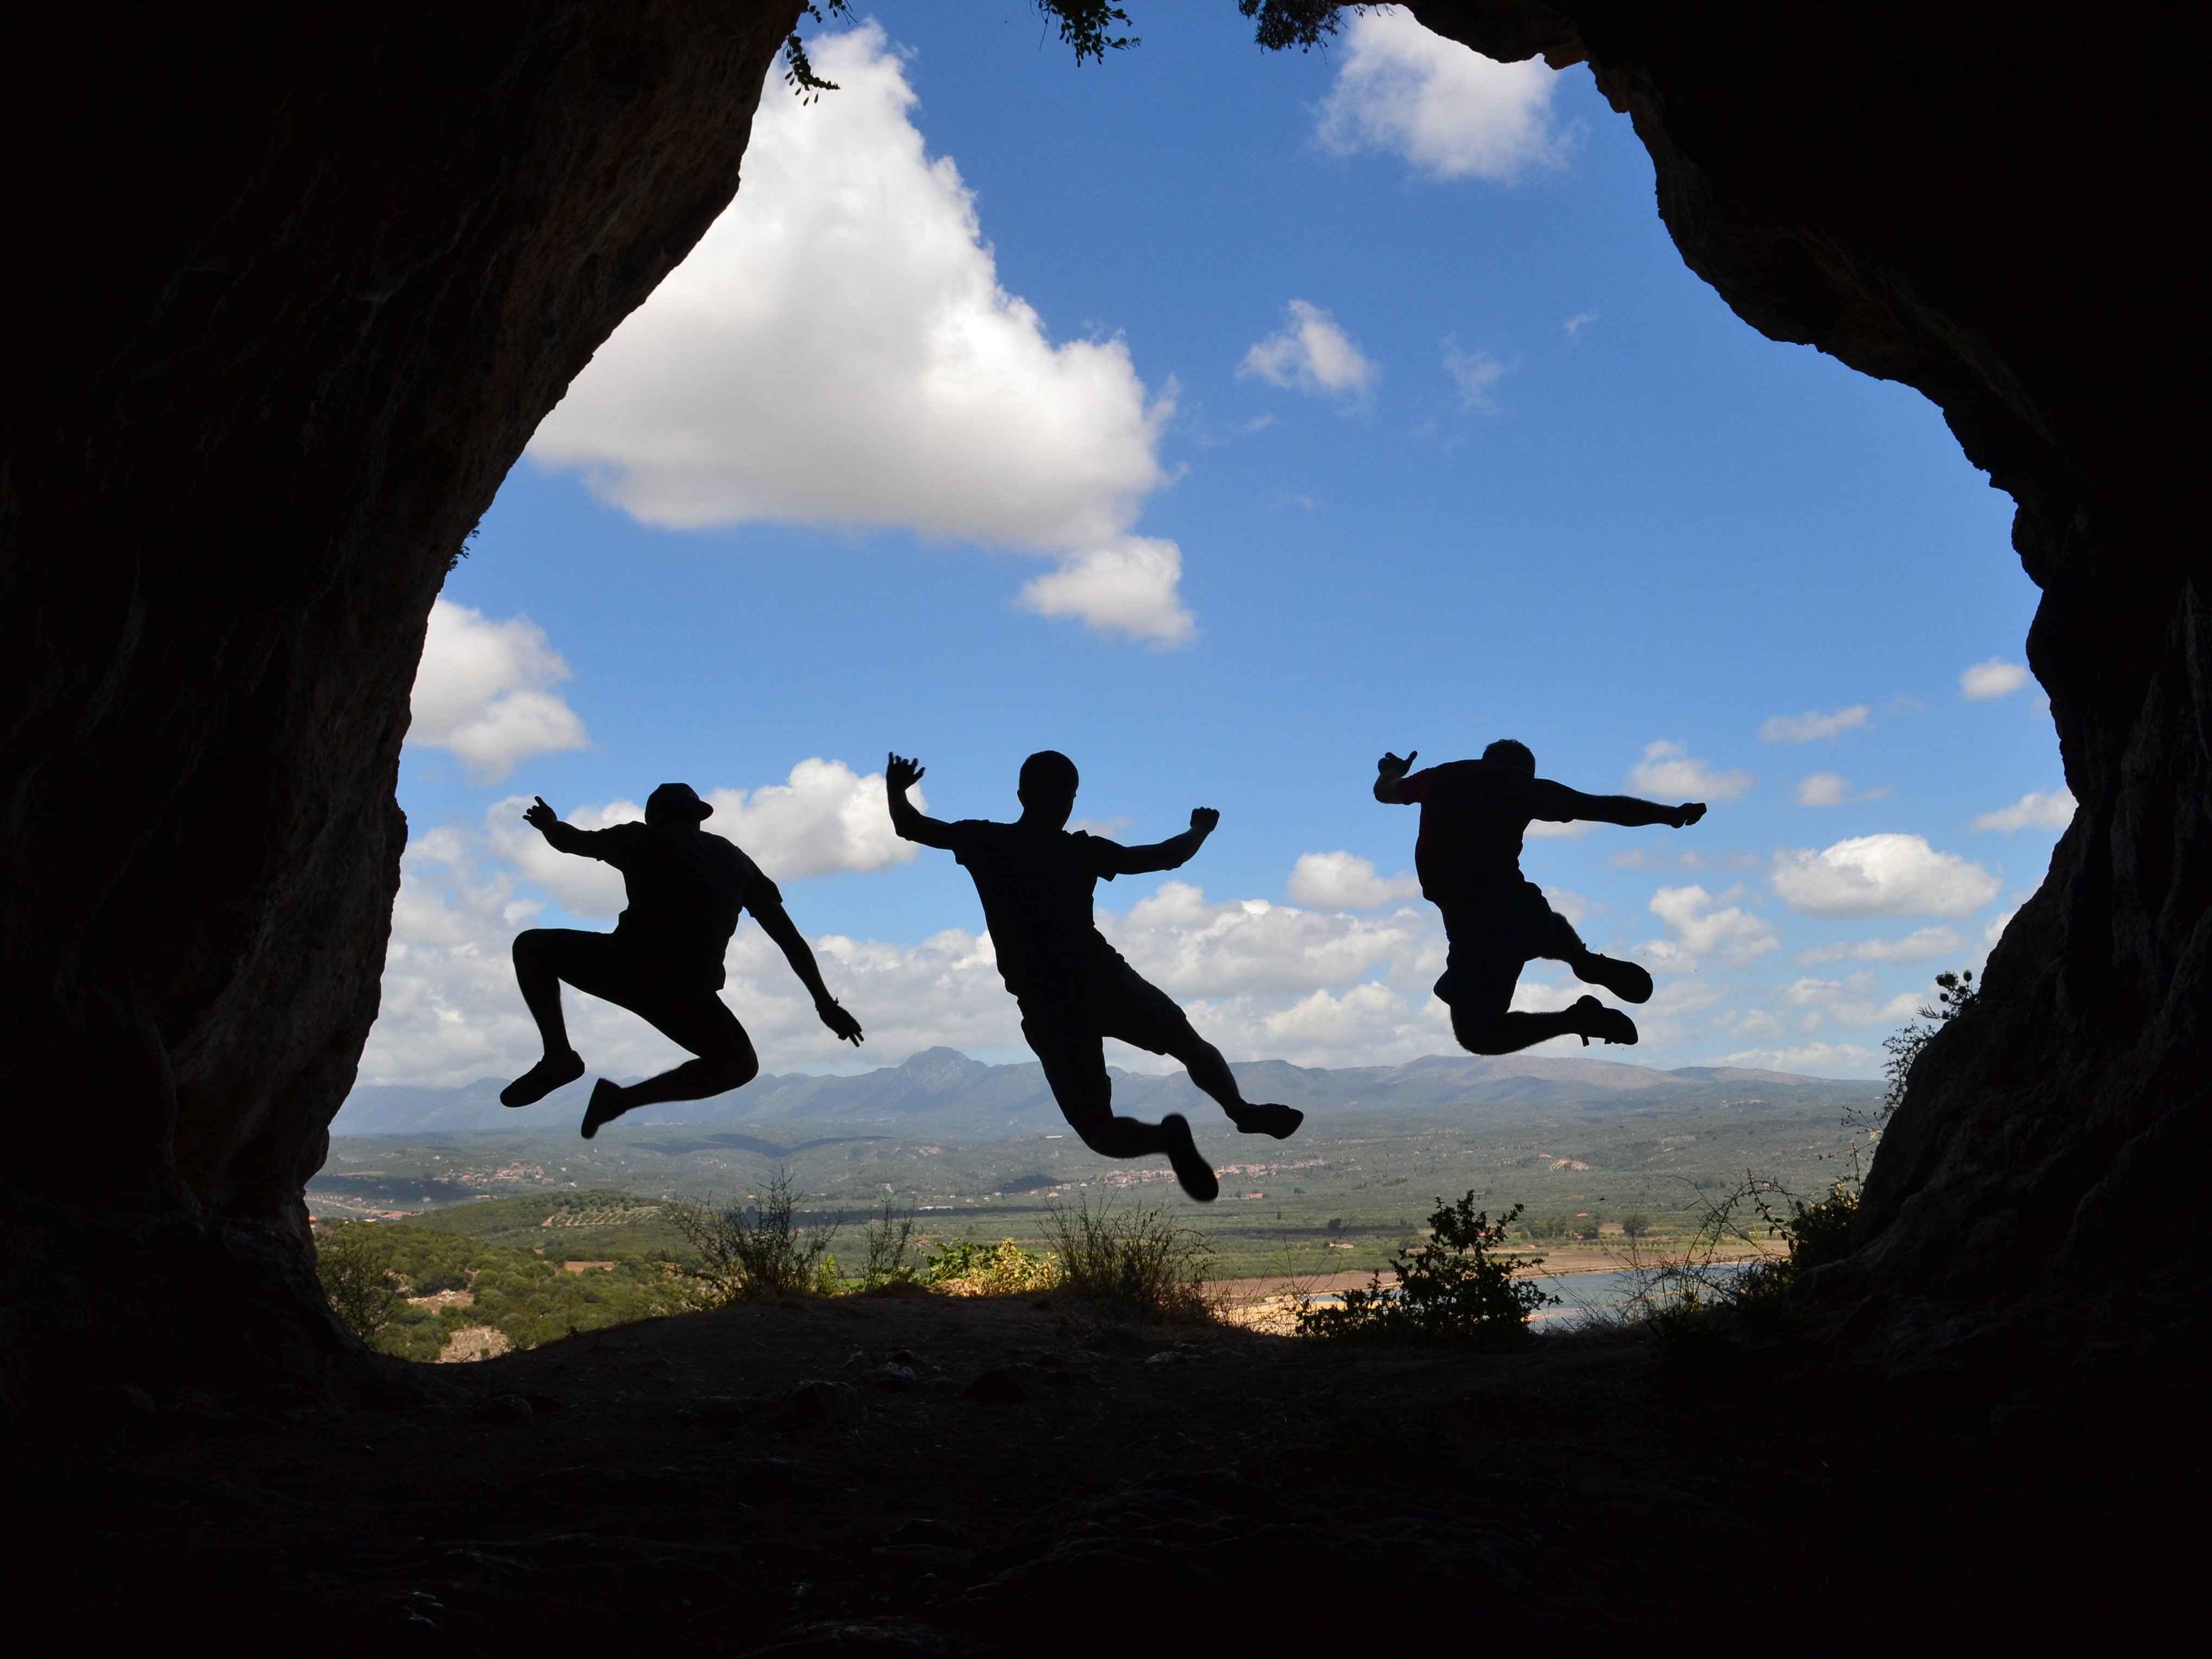 Drei junge Personen springen im Naturpark gleichzeitig in die Luft.